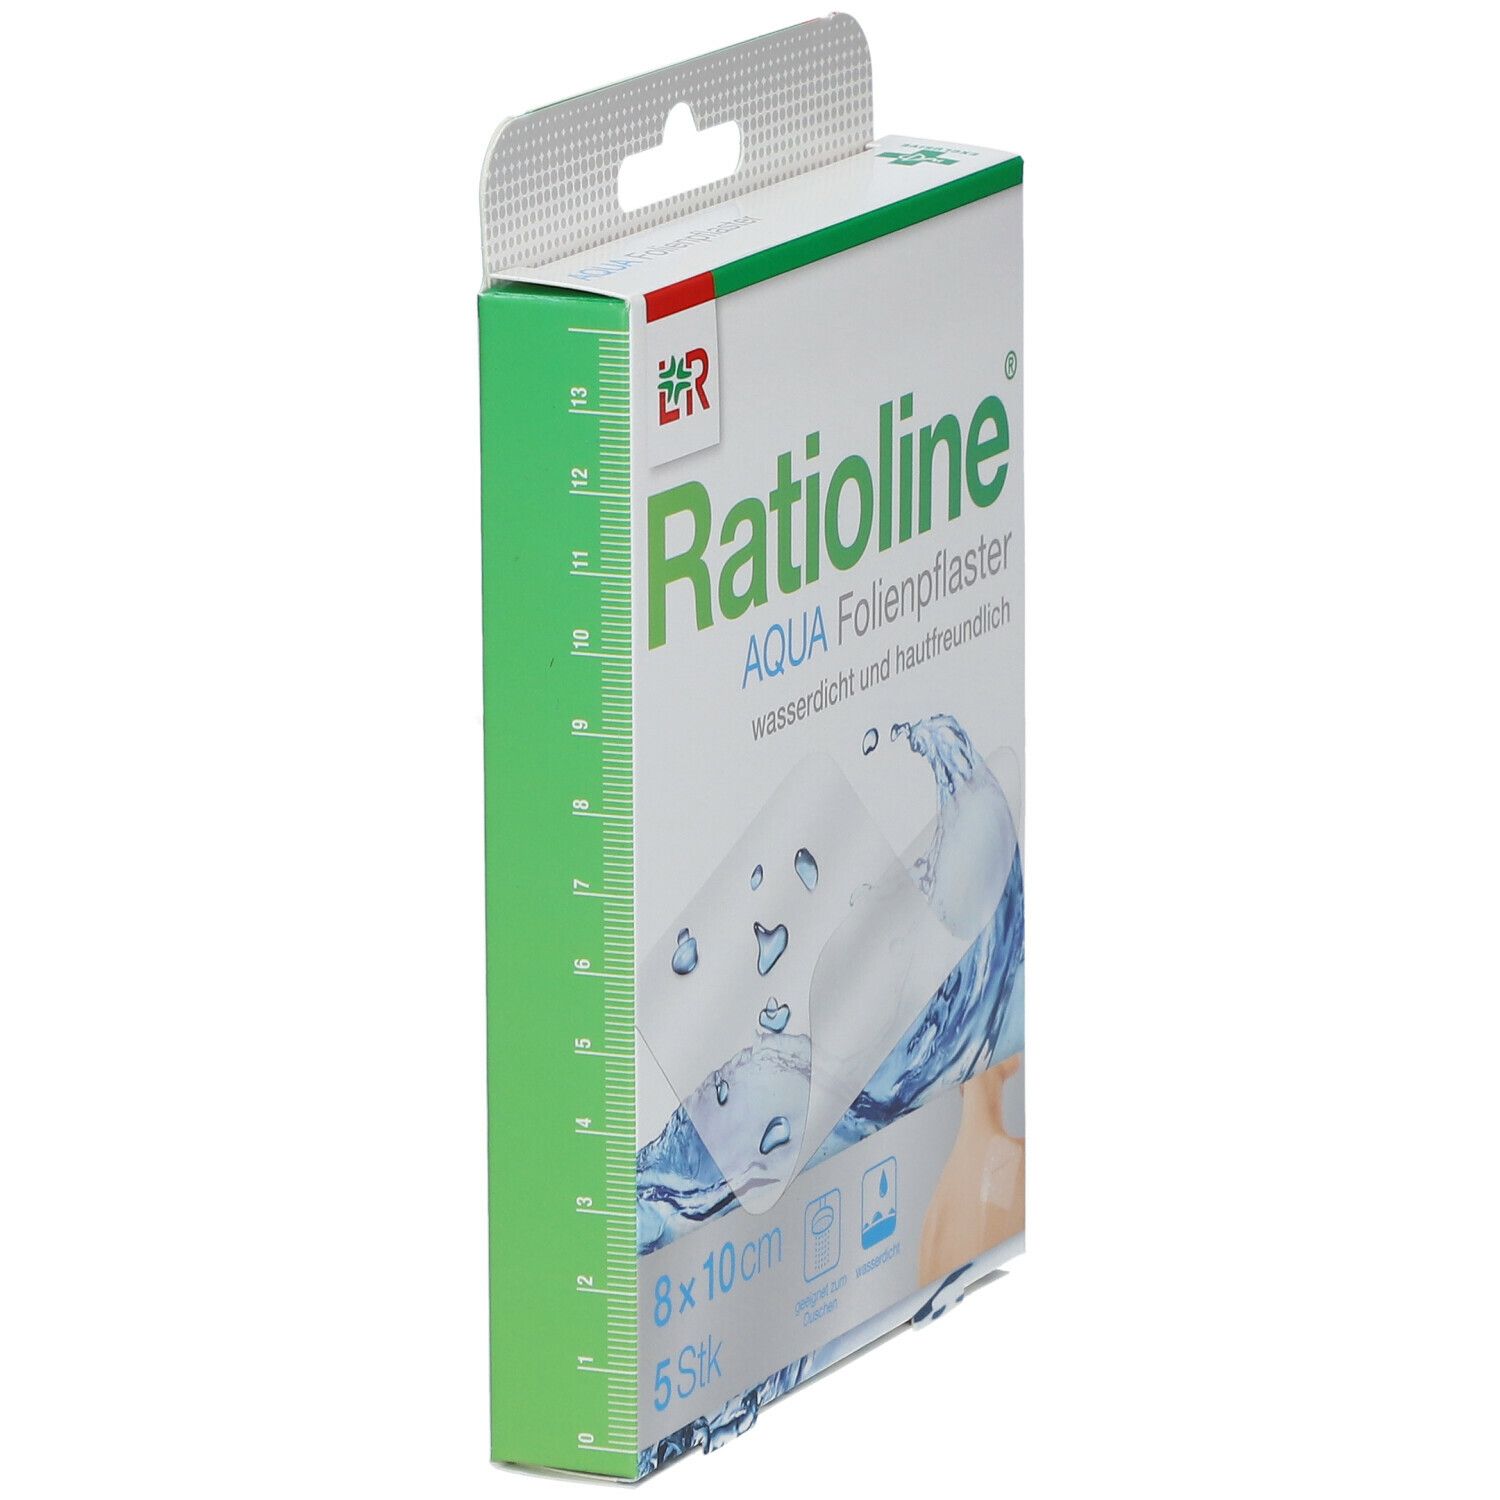 Ratioline® aqua Duschpflaster, transparent  8 x 10 cm